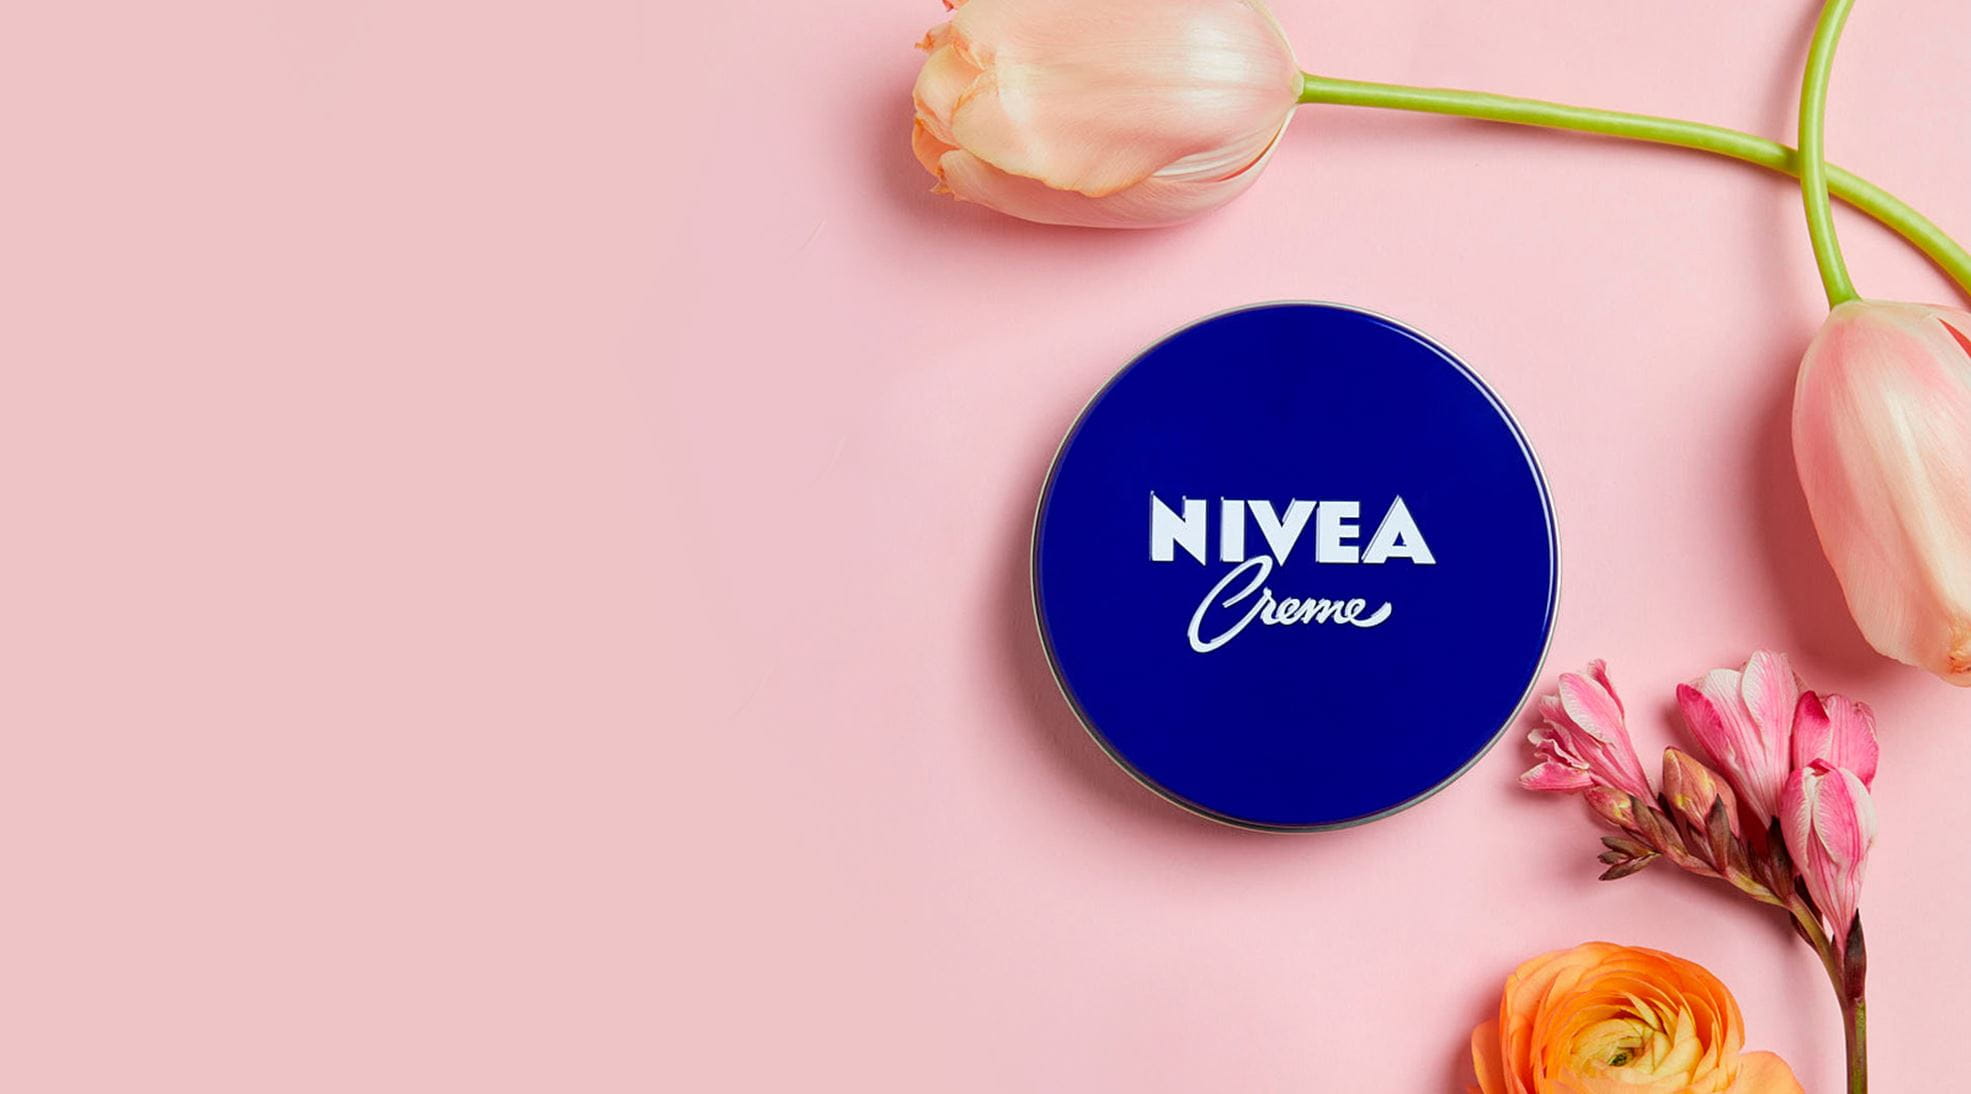 10 vantaggi e idee per utilizzare NIVEA Crème | NIVEA IO